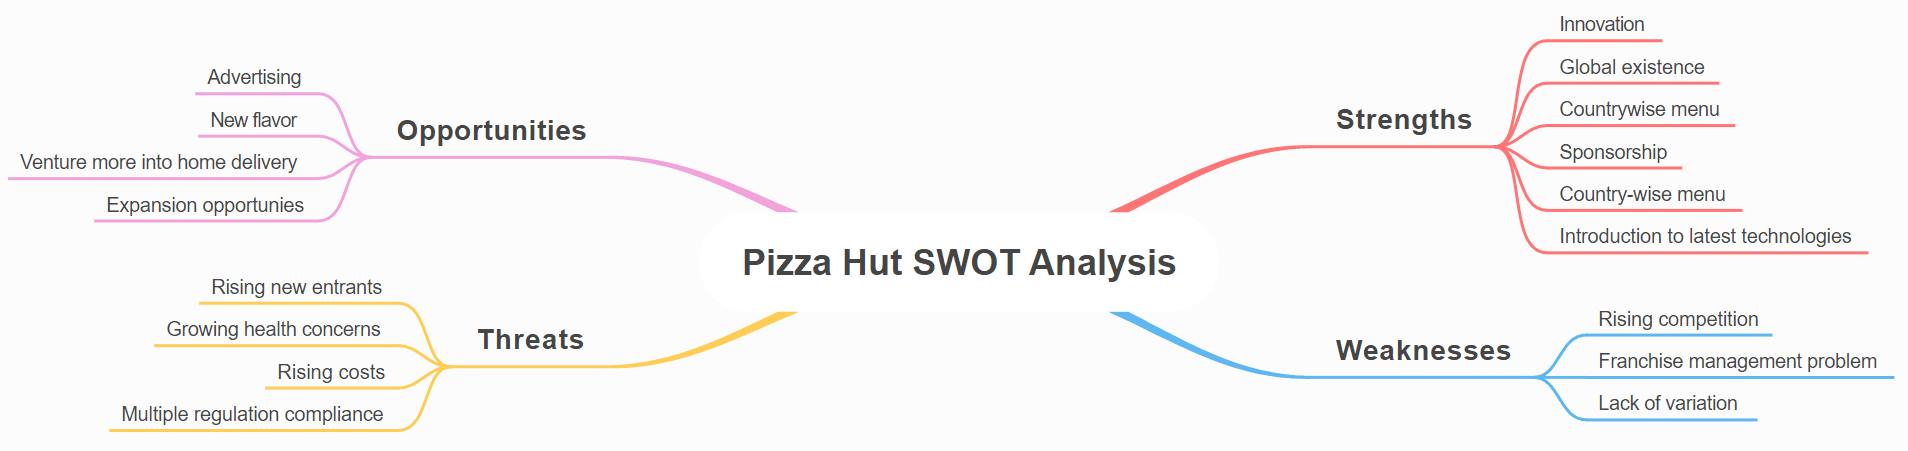 Pizza Hut SWOT Analysis Mind Map